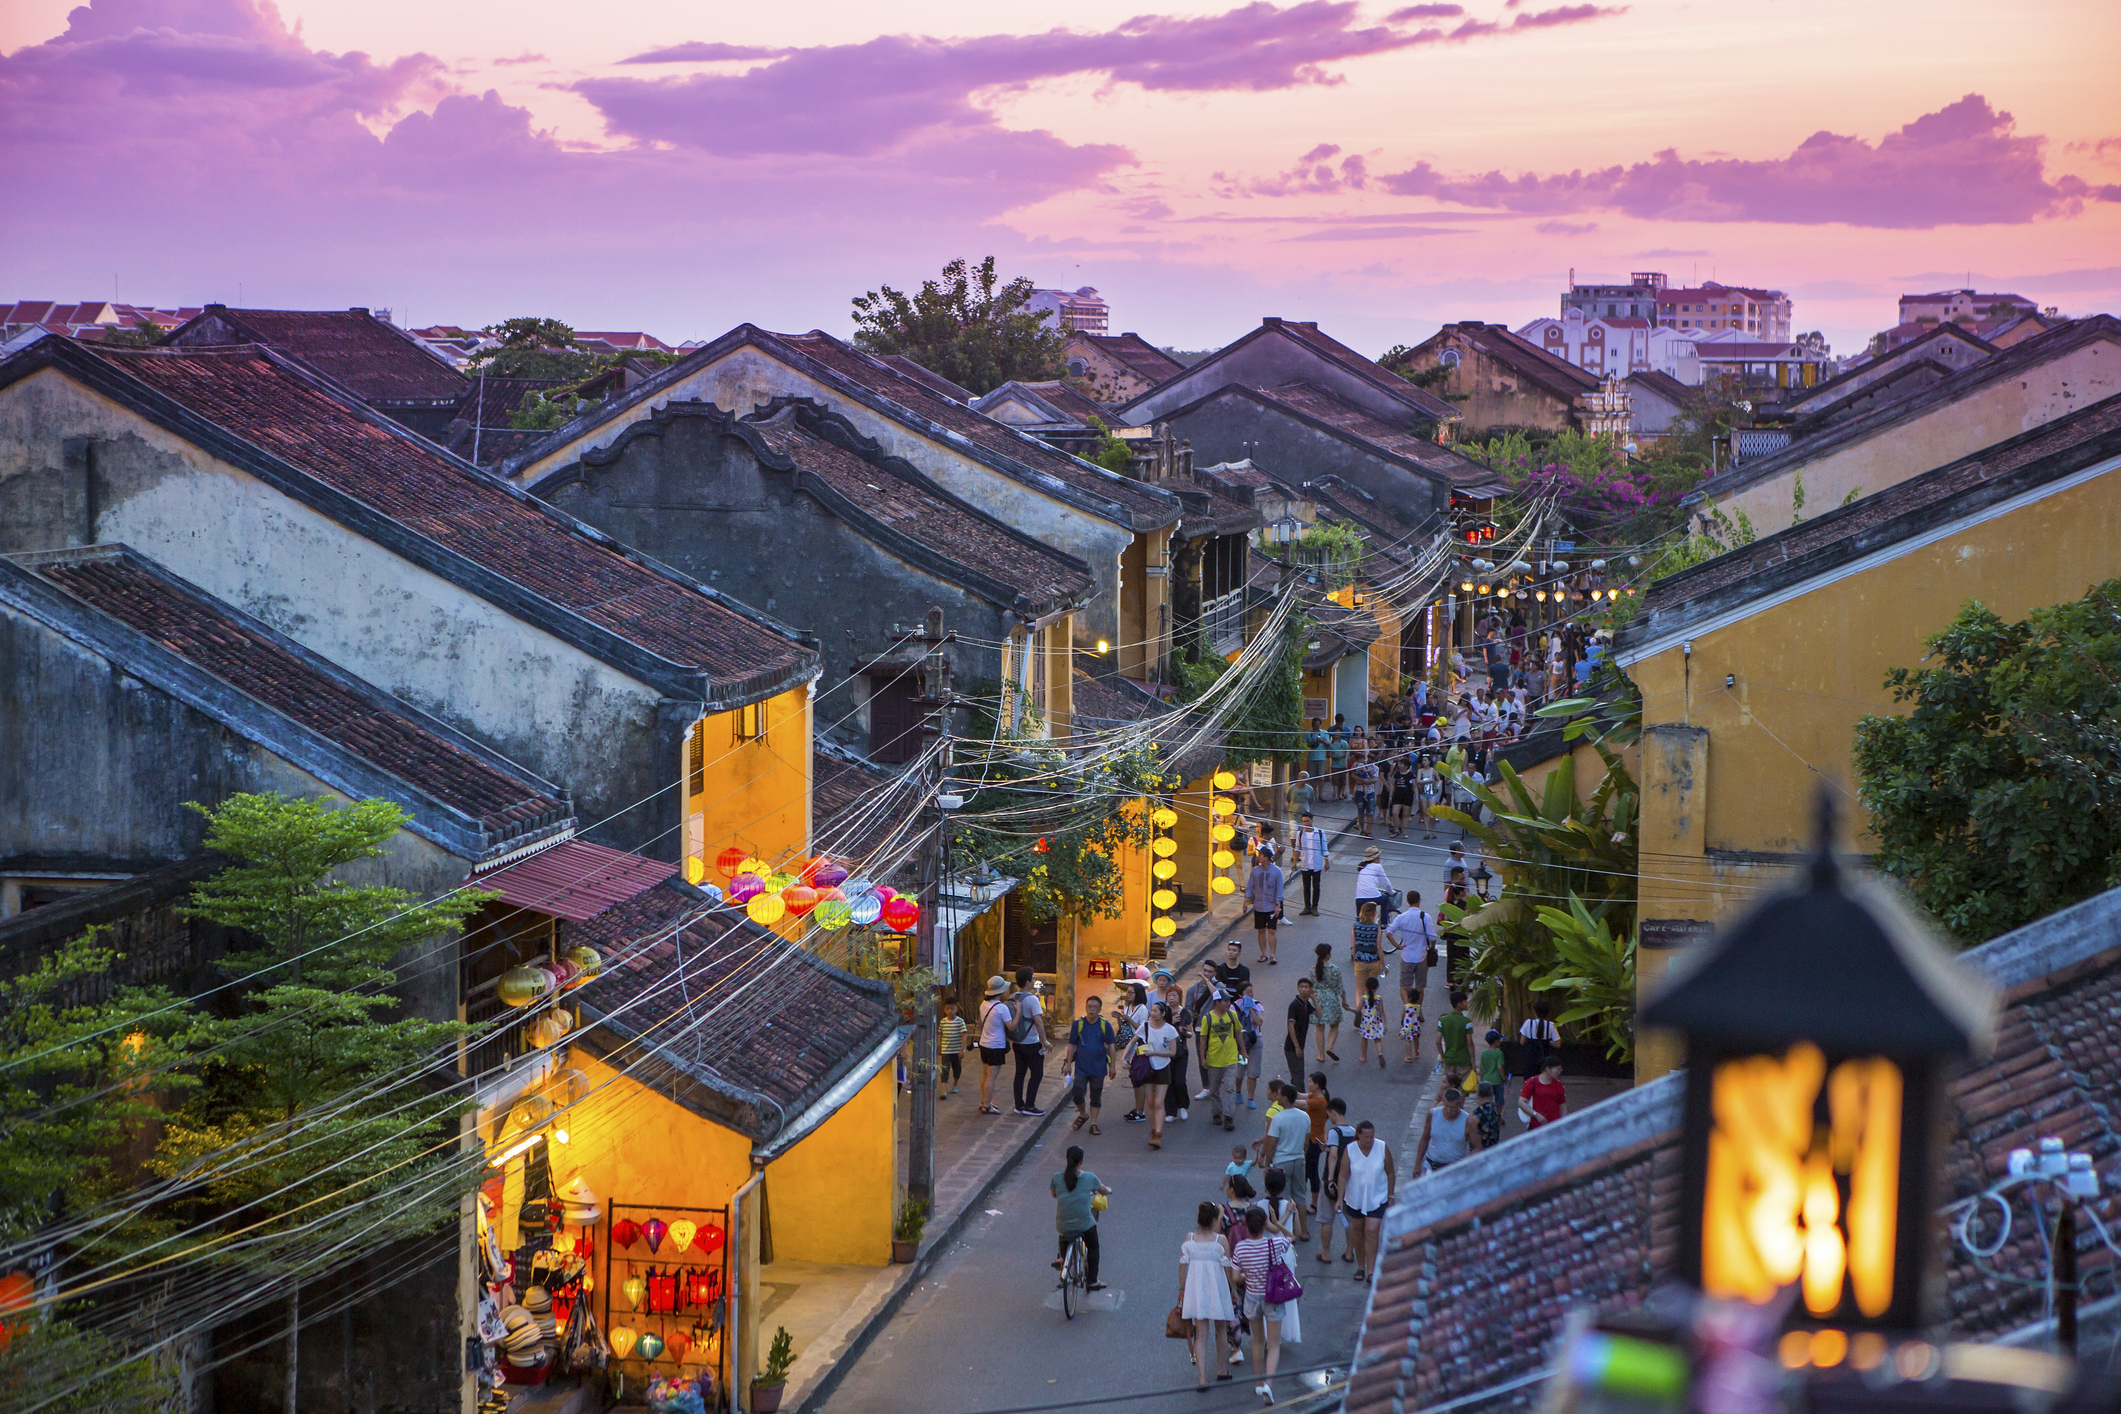 City view of Hoi An, Vietnam